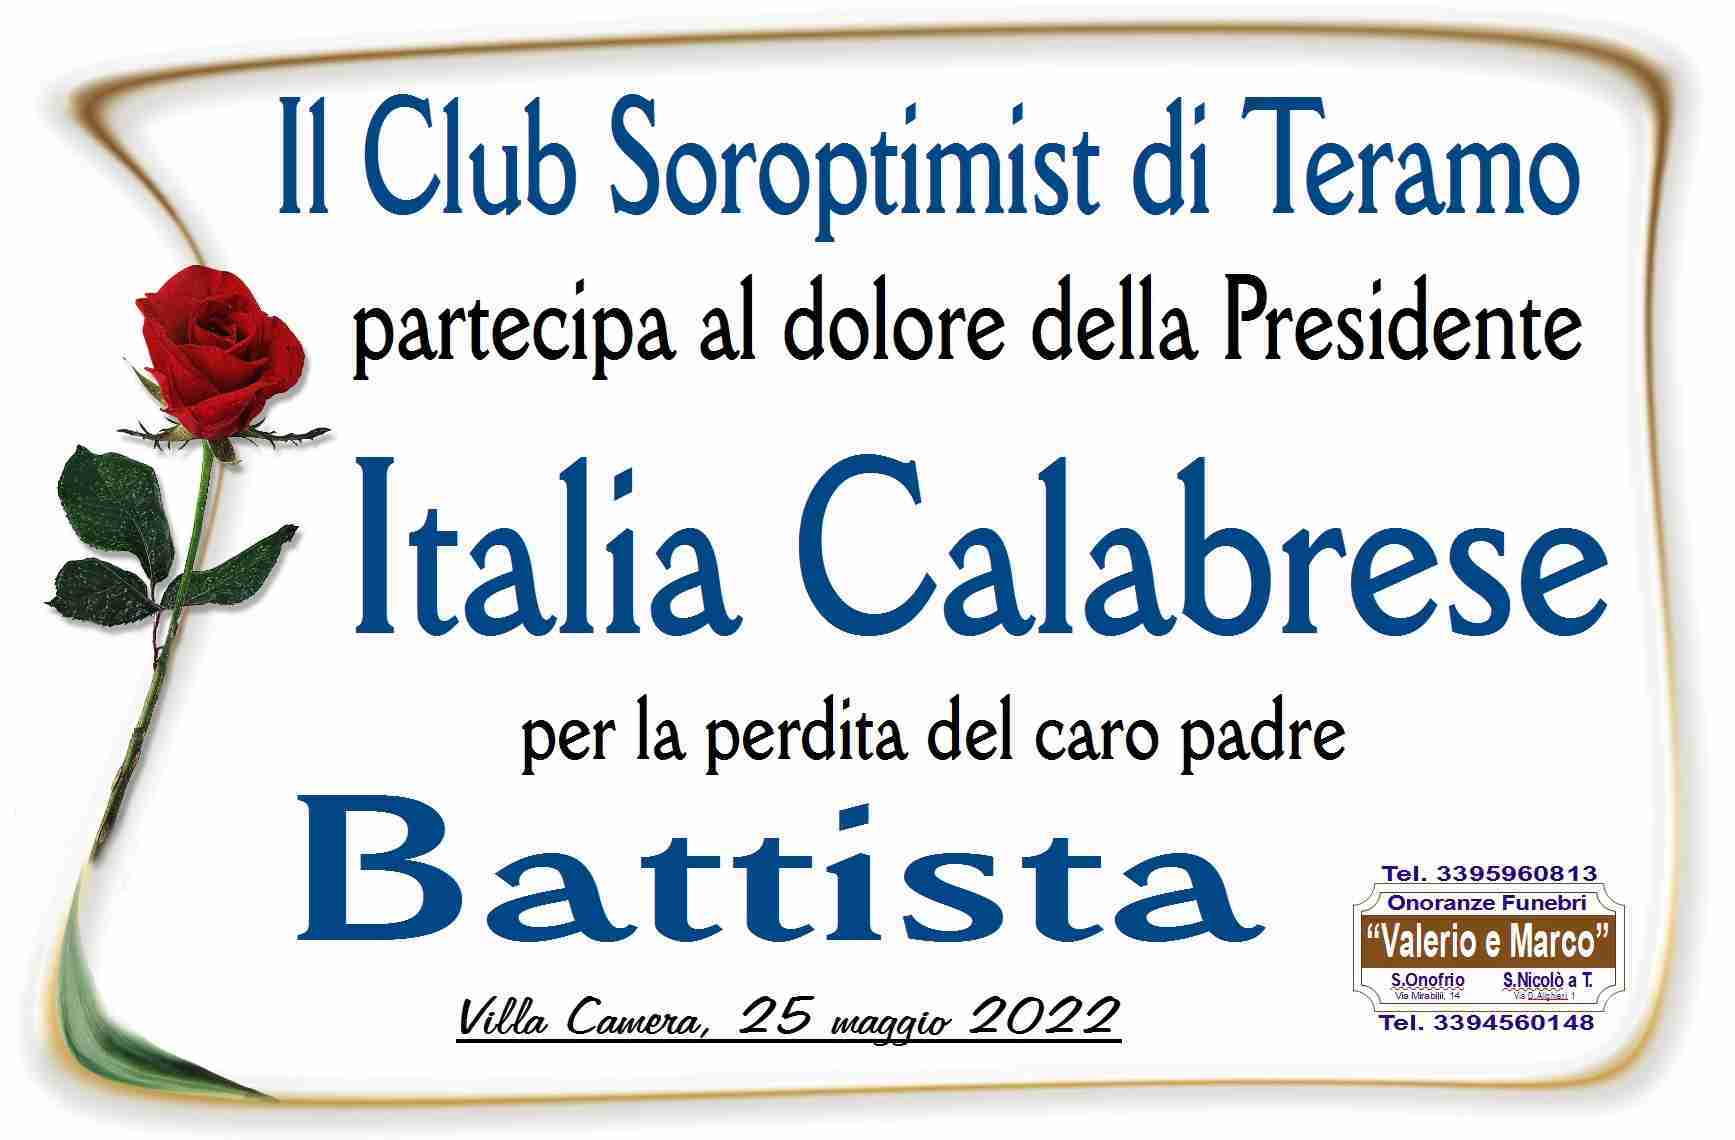 Battista Calabrese